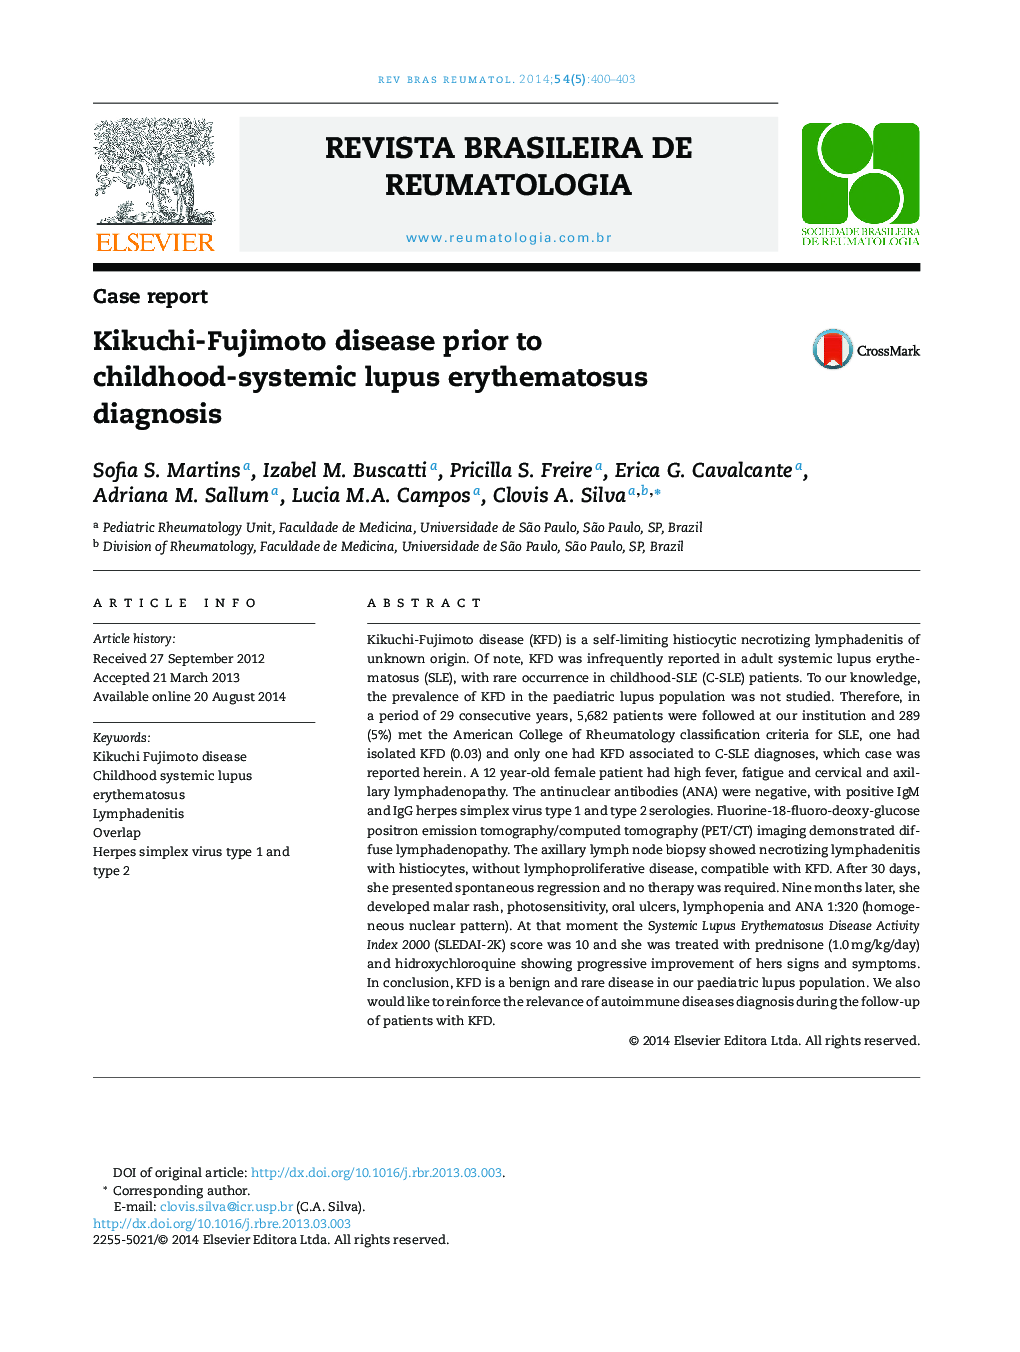 Kikuchi-Fujimoto disease prior to childhood-systemic lupus erythematosus diagnosis